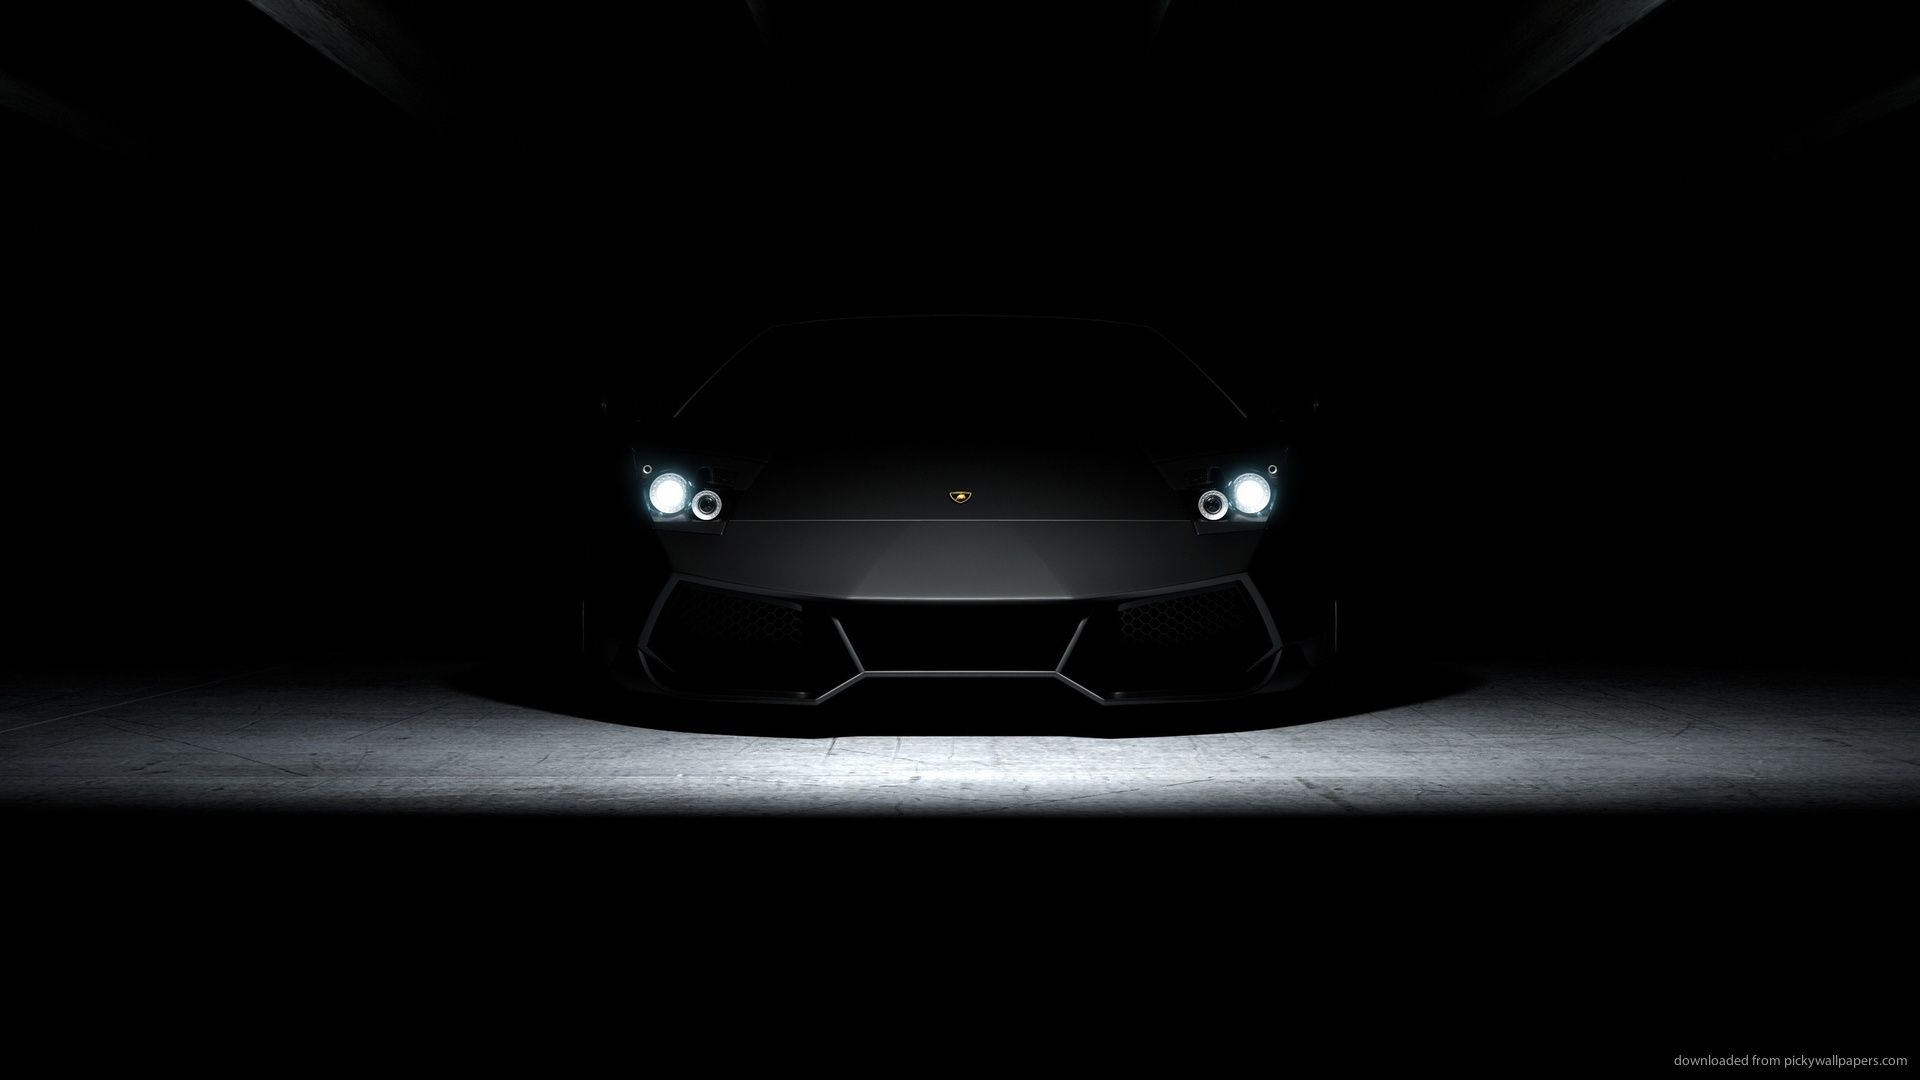 Download 1920x1080 Lamborghini Aventador Lp700 In Dark Wallpaper